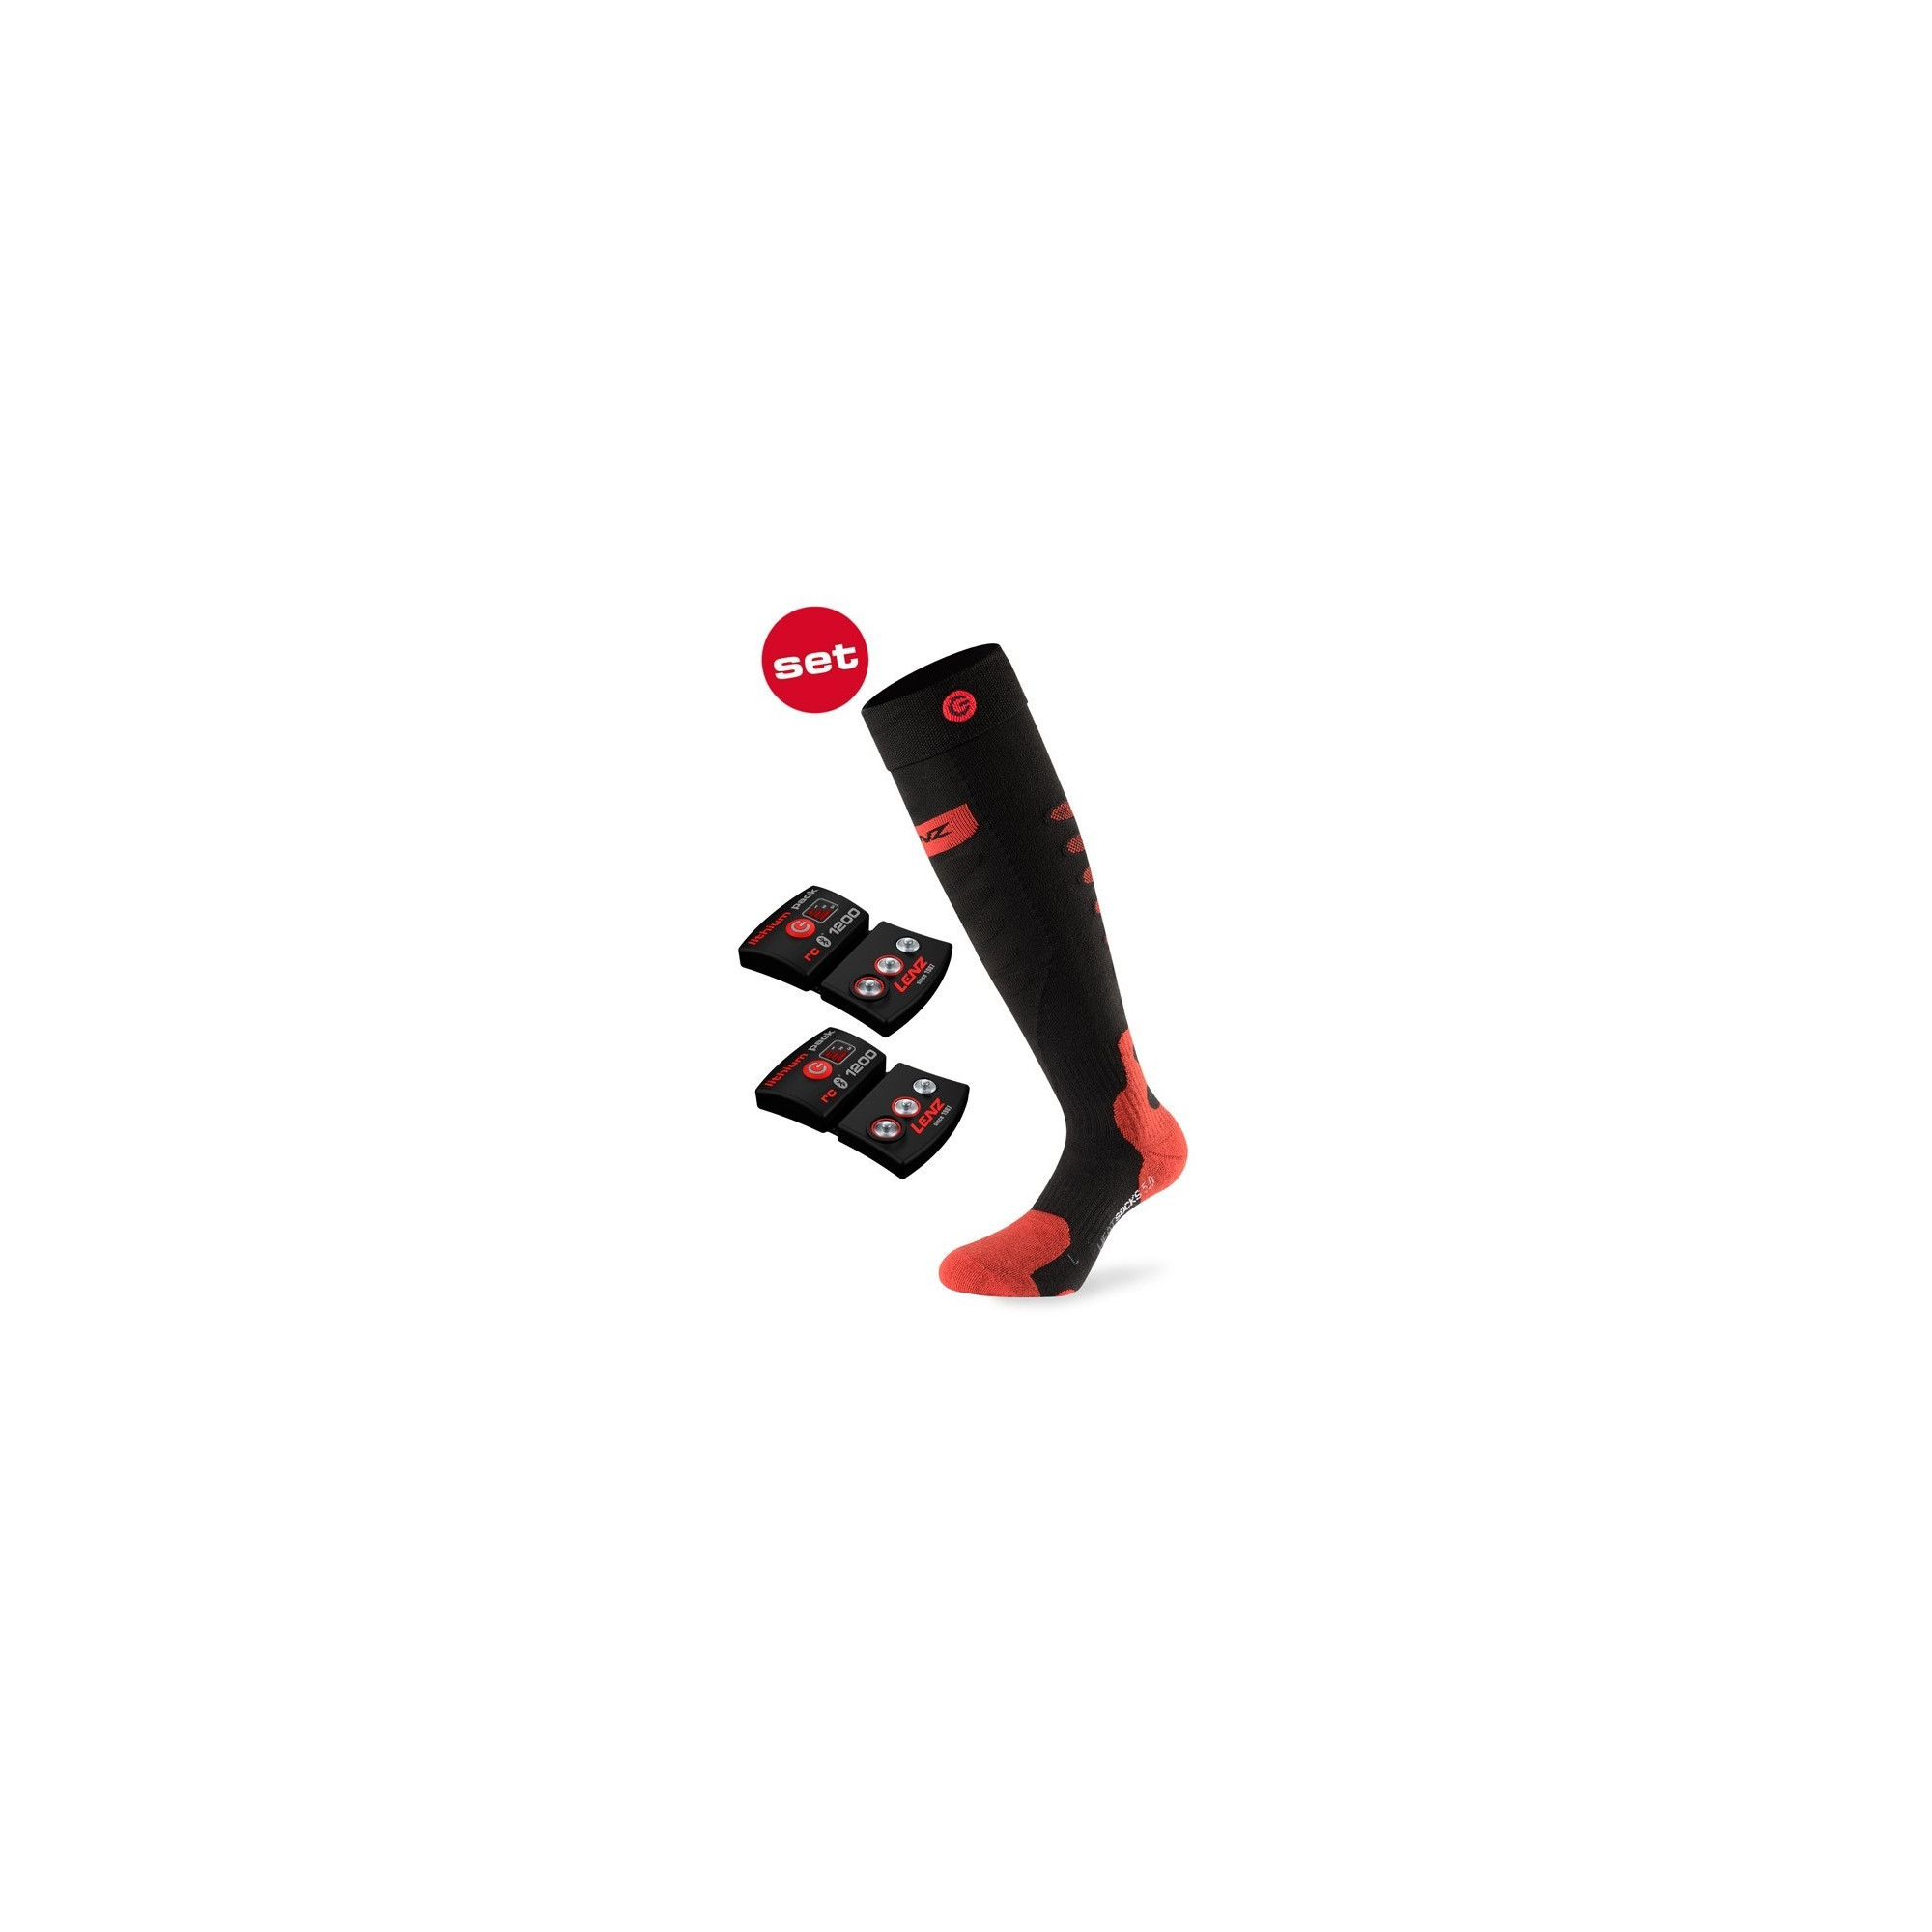 Lenz- Batteries rechargeables chaussettes - Autres accessoires - Inuka